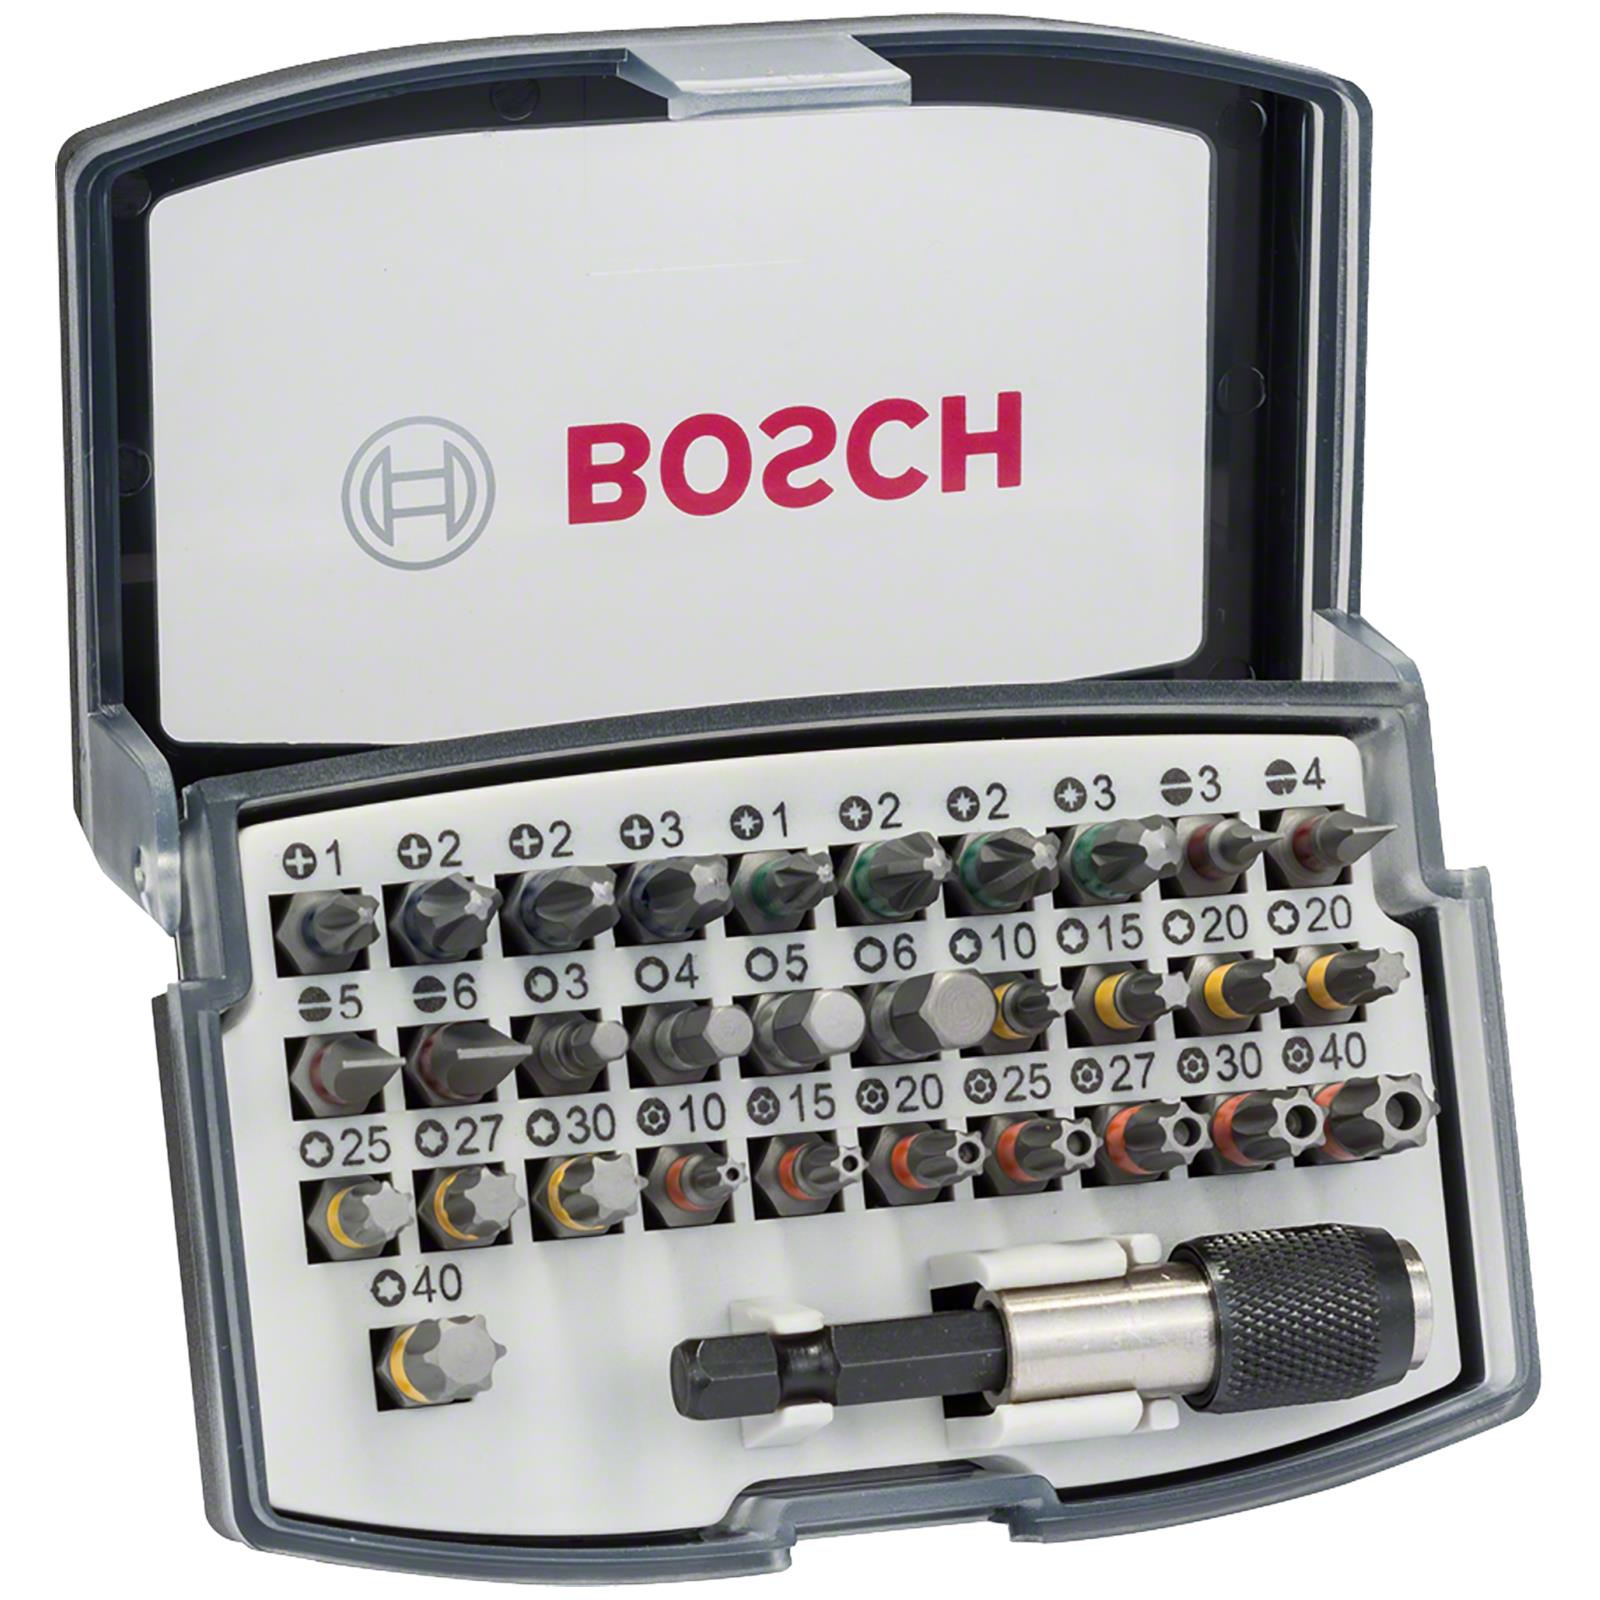 Bosch Screwdriver Bit Set 32 Piece Quick Change Bit Holder in Case